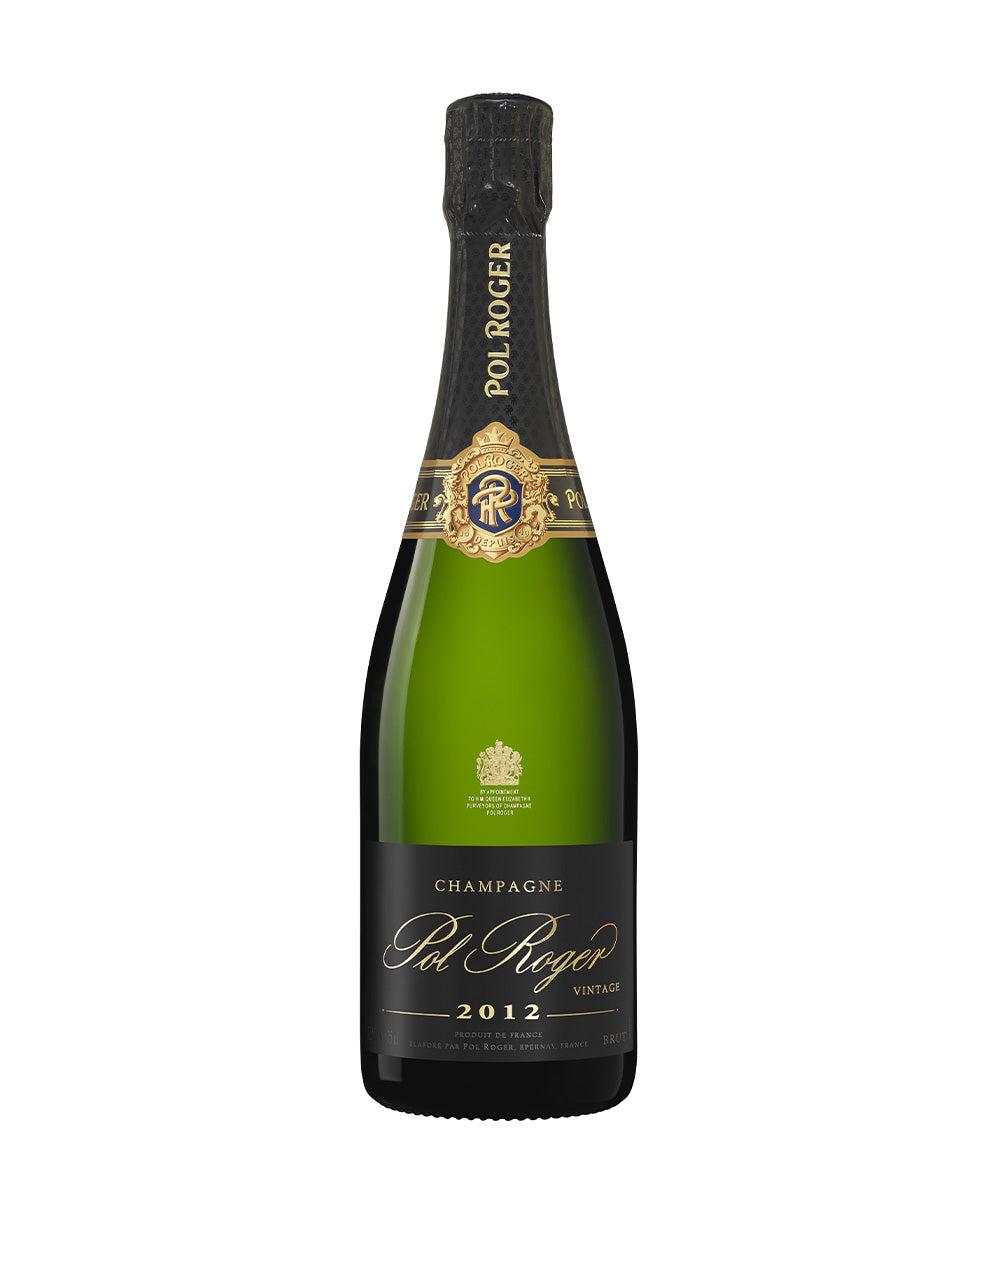 Champagne Pol Roger Brut Vintage 2012